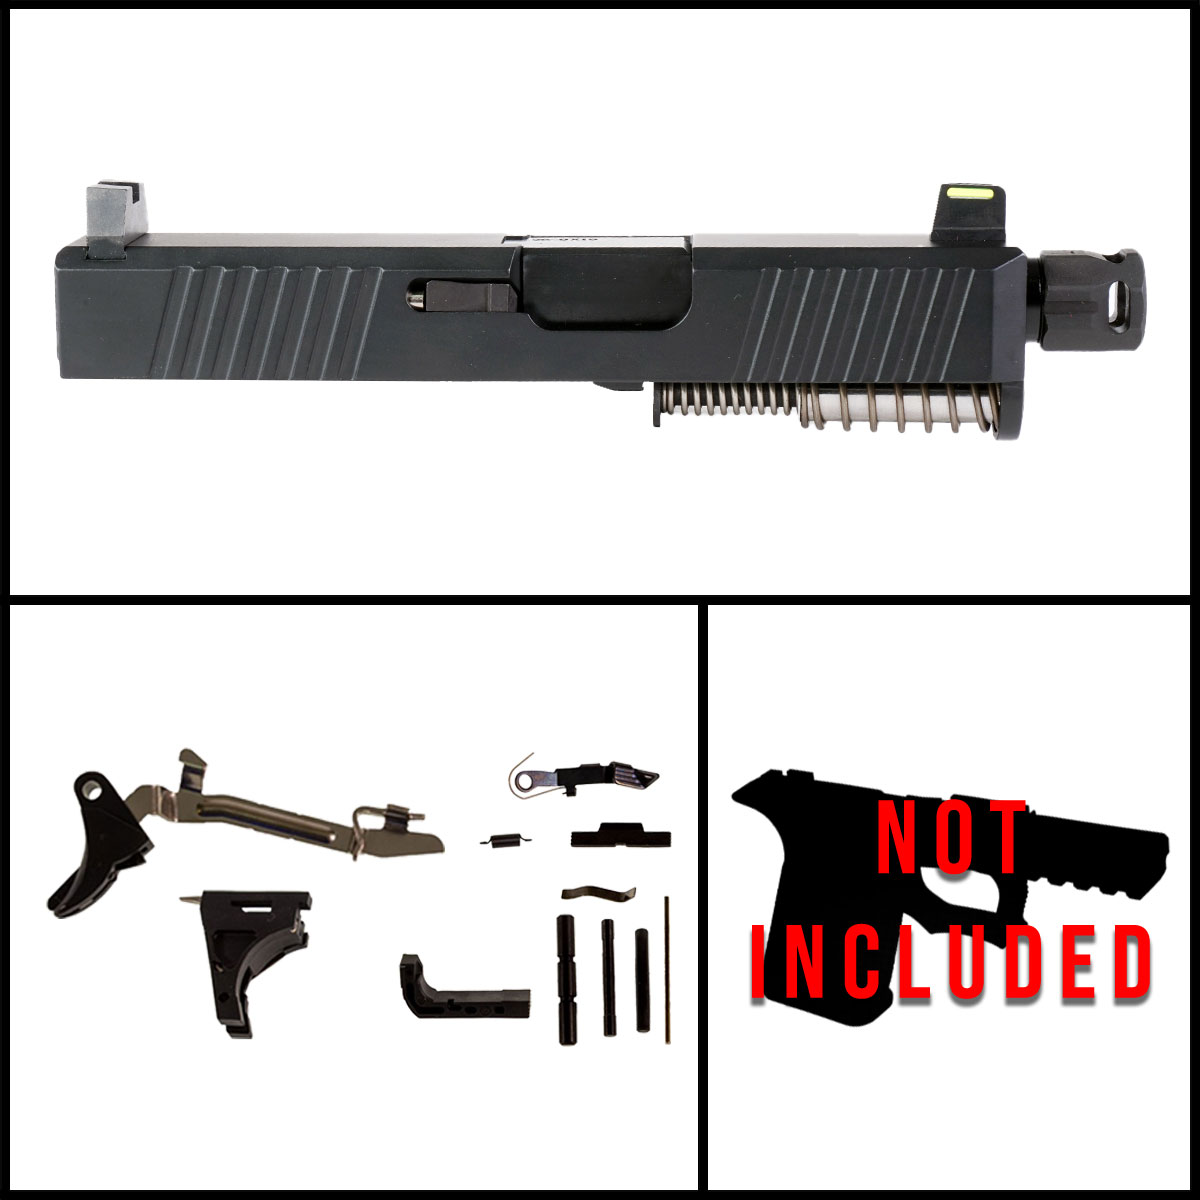 MMC 'Providence Power' 9mm Full Gun Kit - Glock 26 Gen 1-3 Compatible